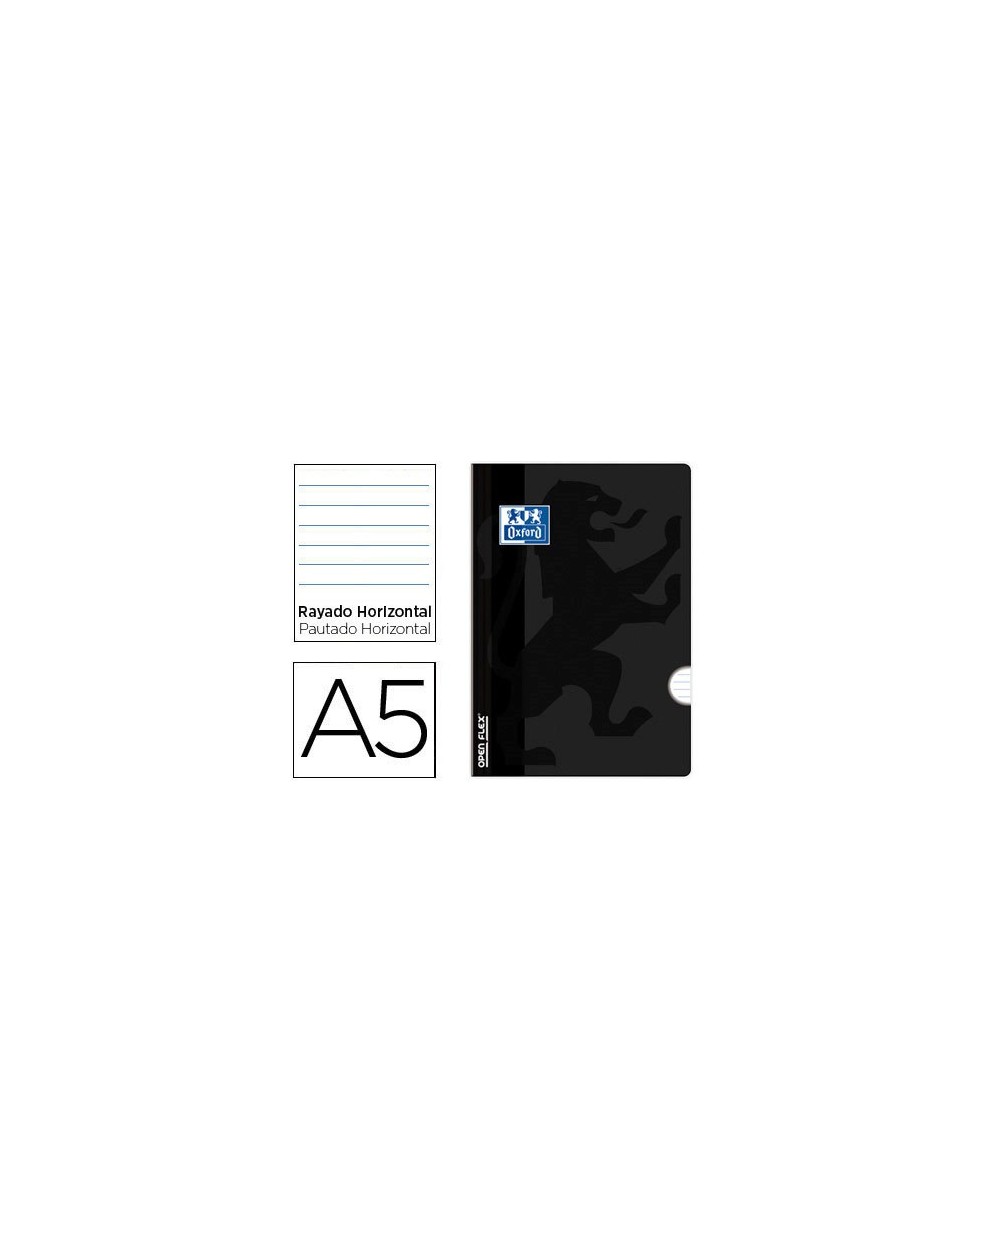 Libreta escolar oxford openflex tapa flexible optik paper 48 hojas din a5 rayado horizontal color negro